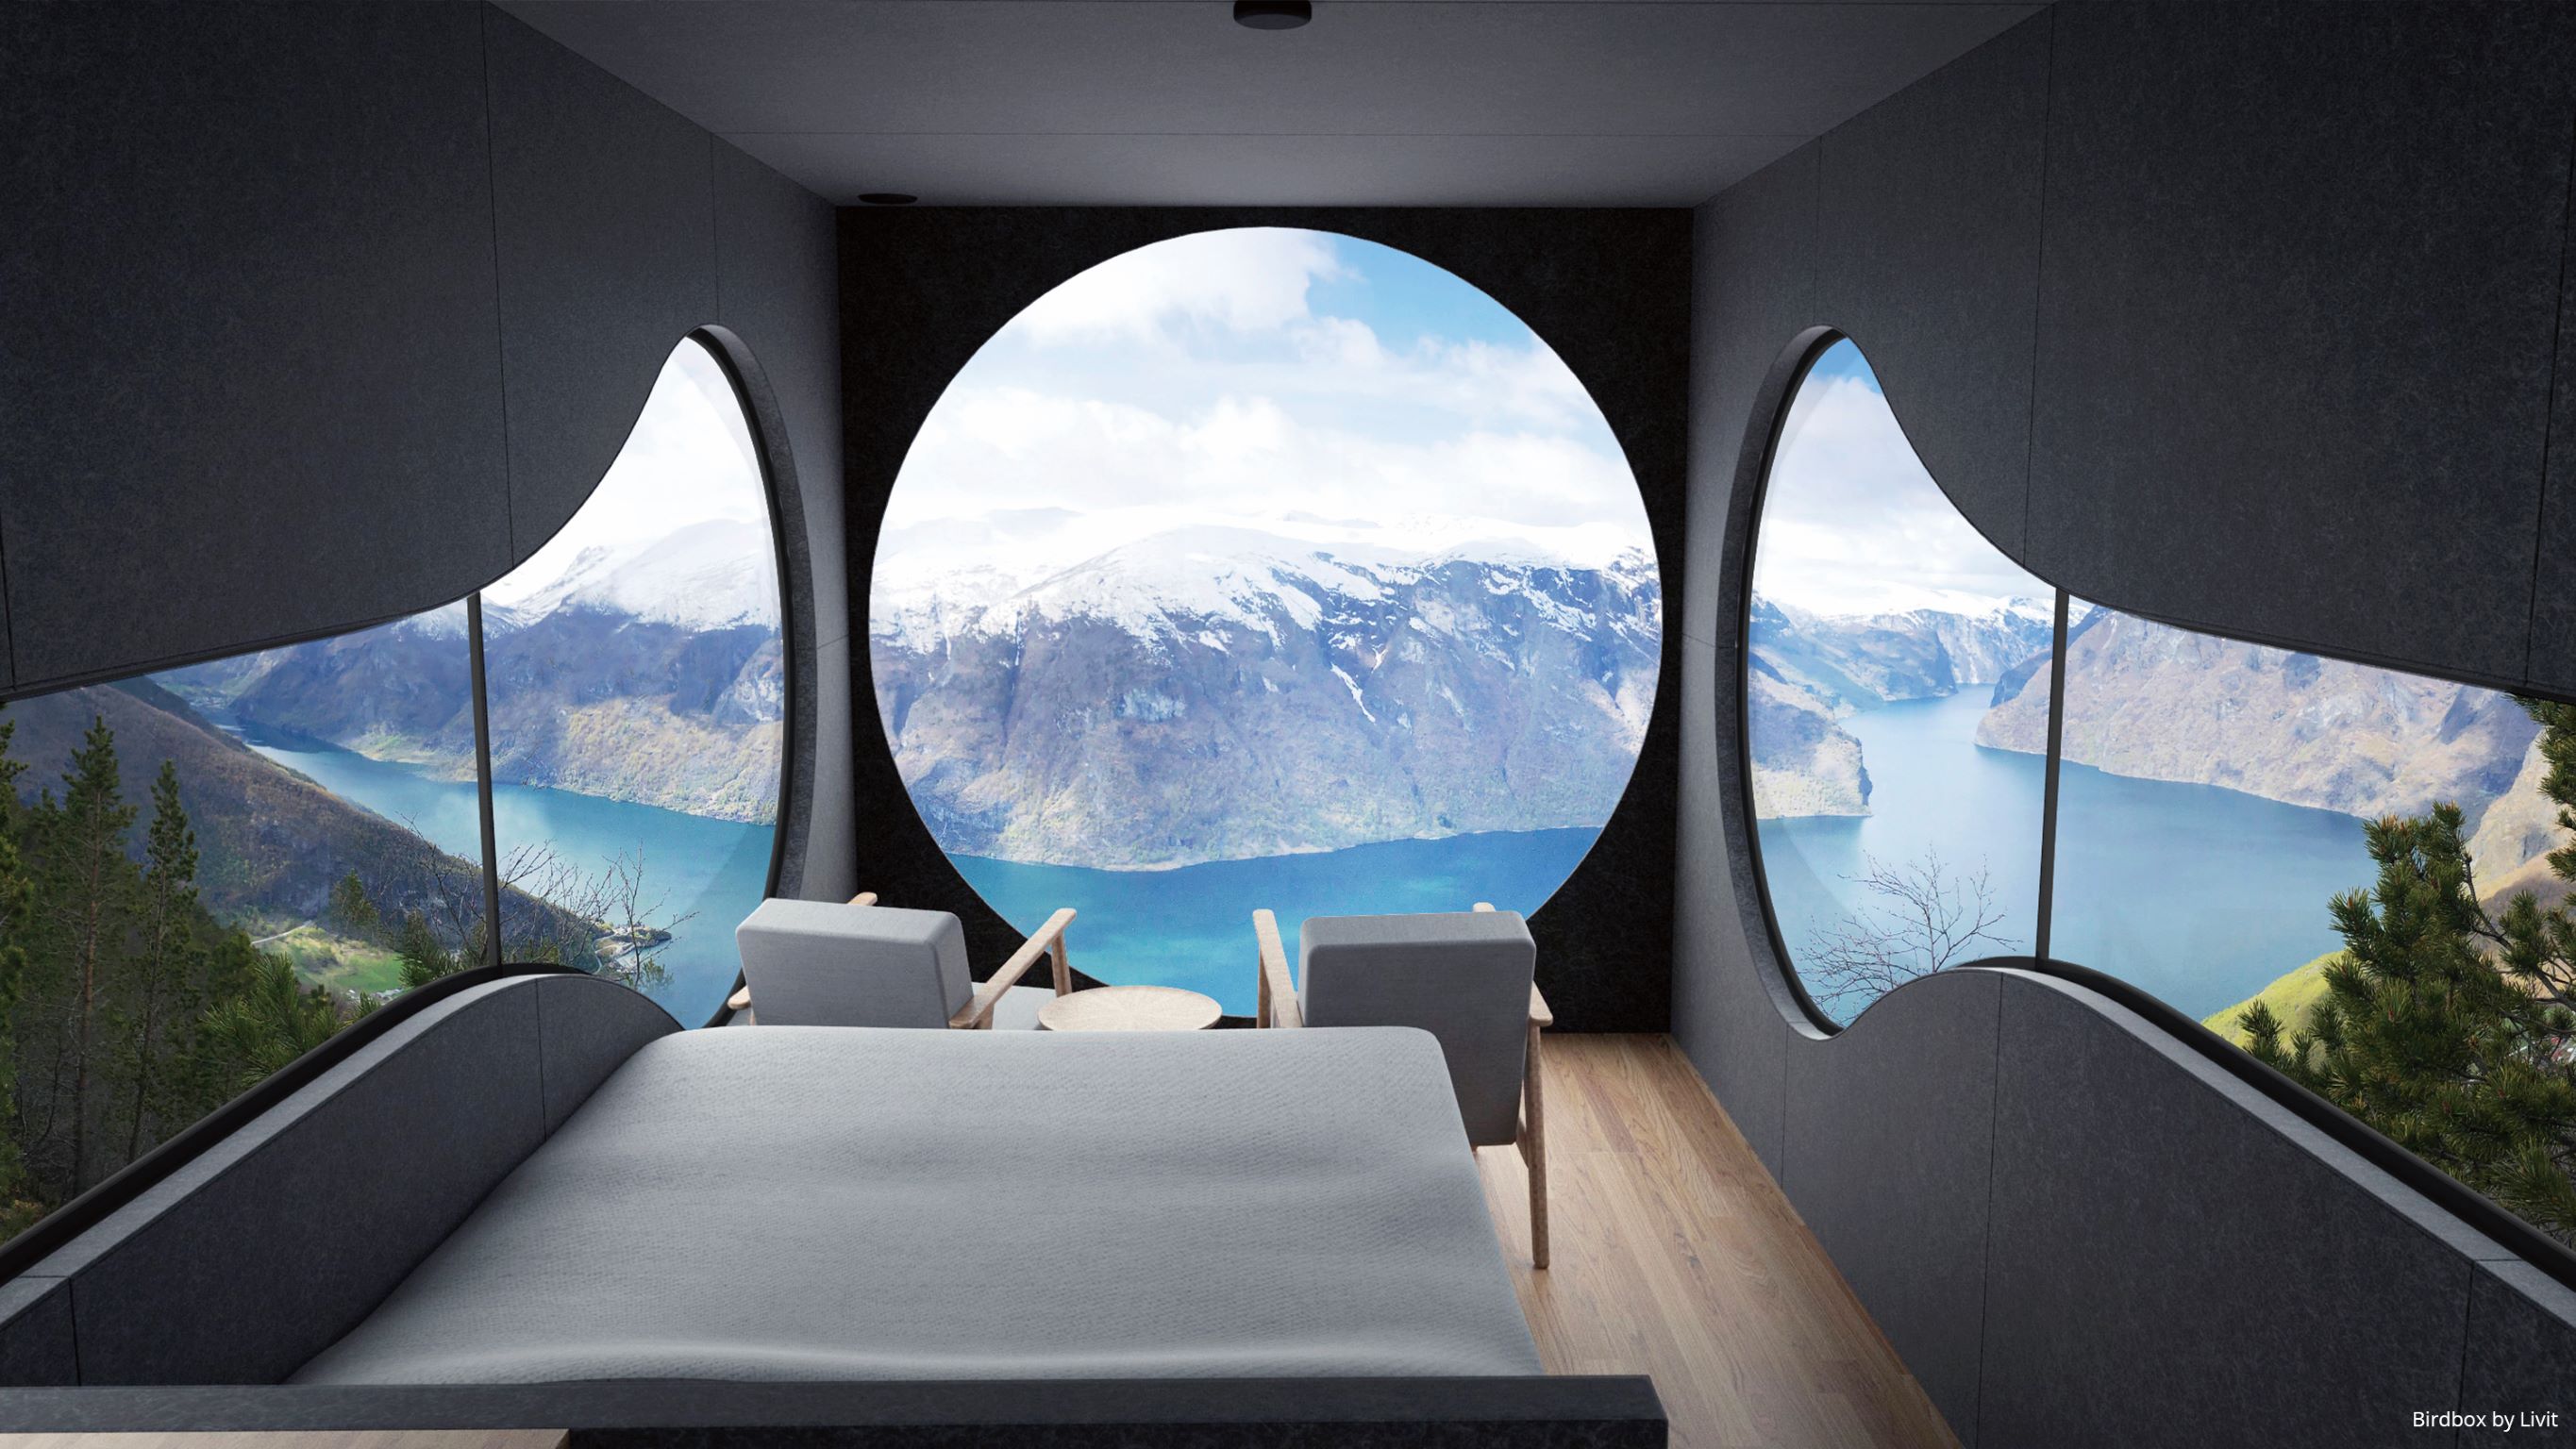 坐落在峡湾山顶上的 Birdbox Adventure Cabin，透过几何窗户坐拥绝美风光